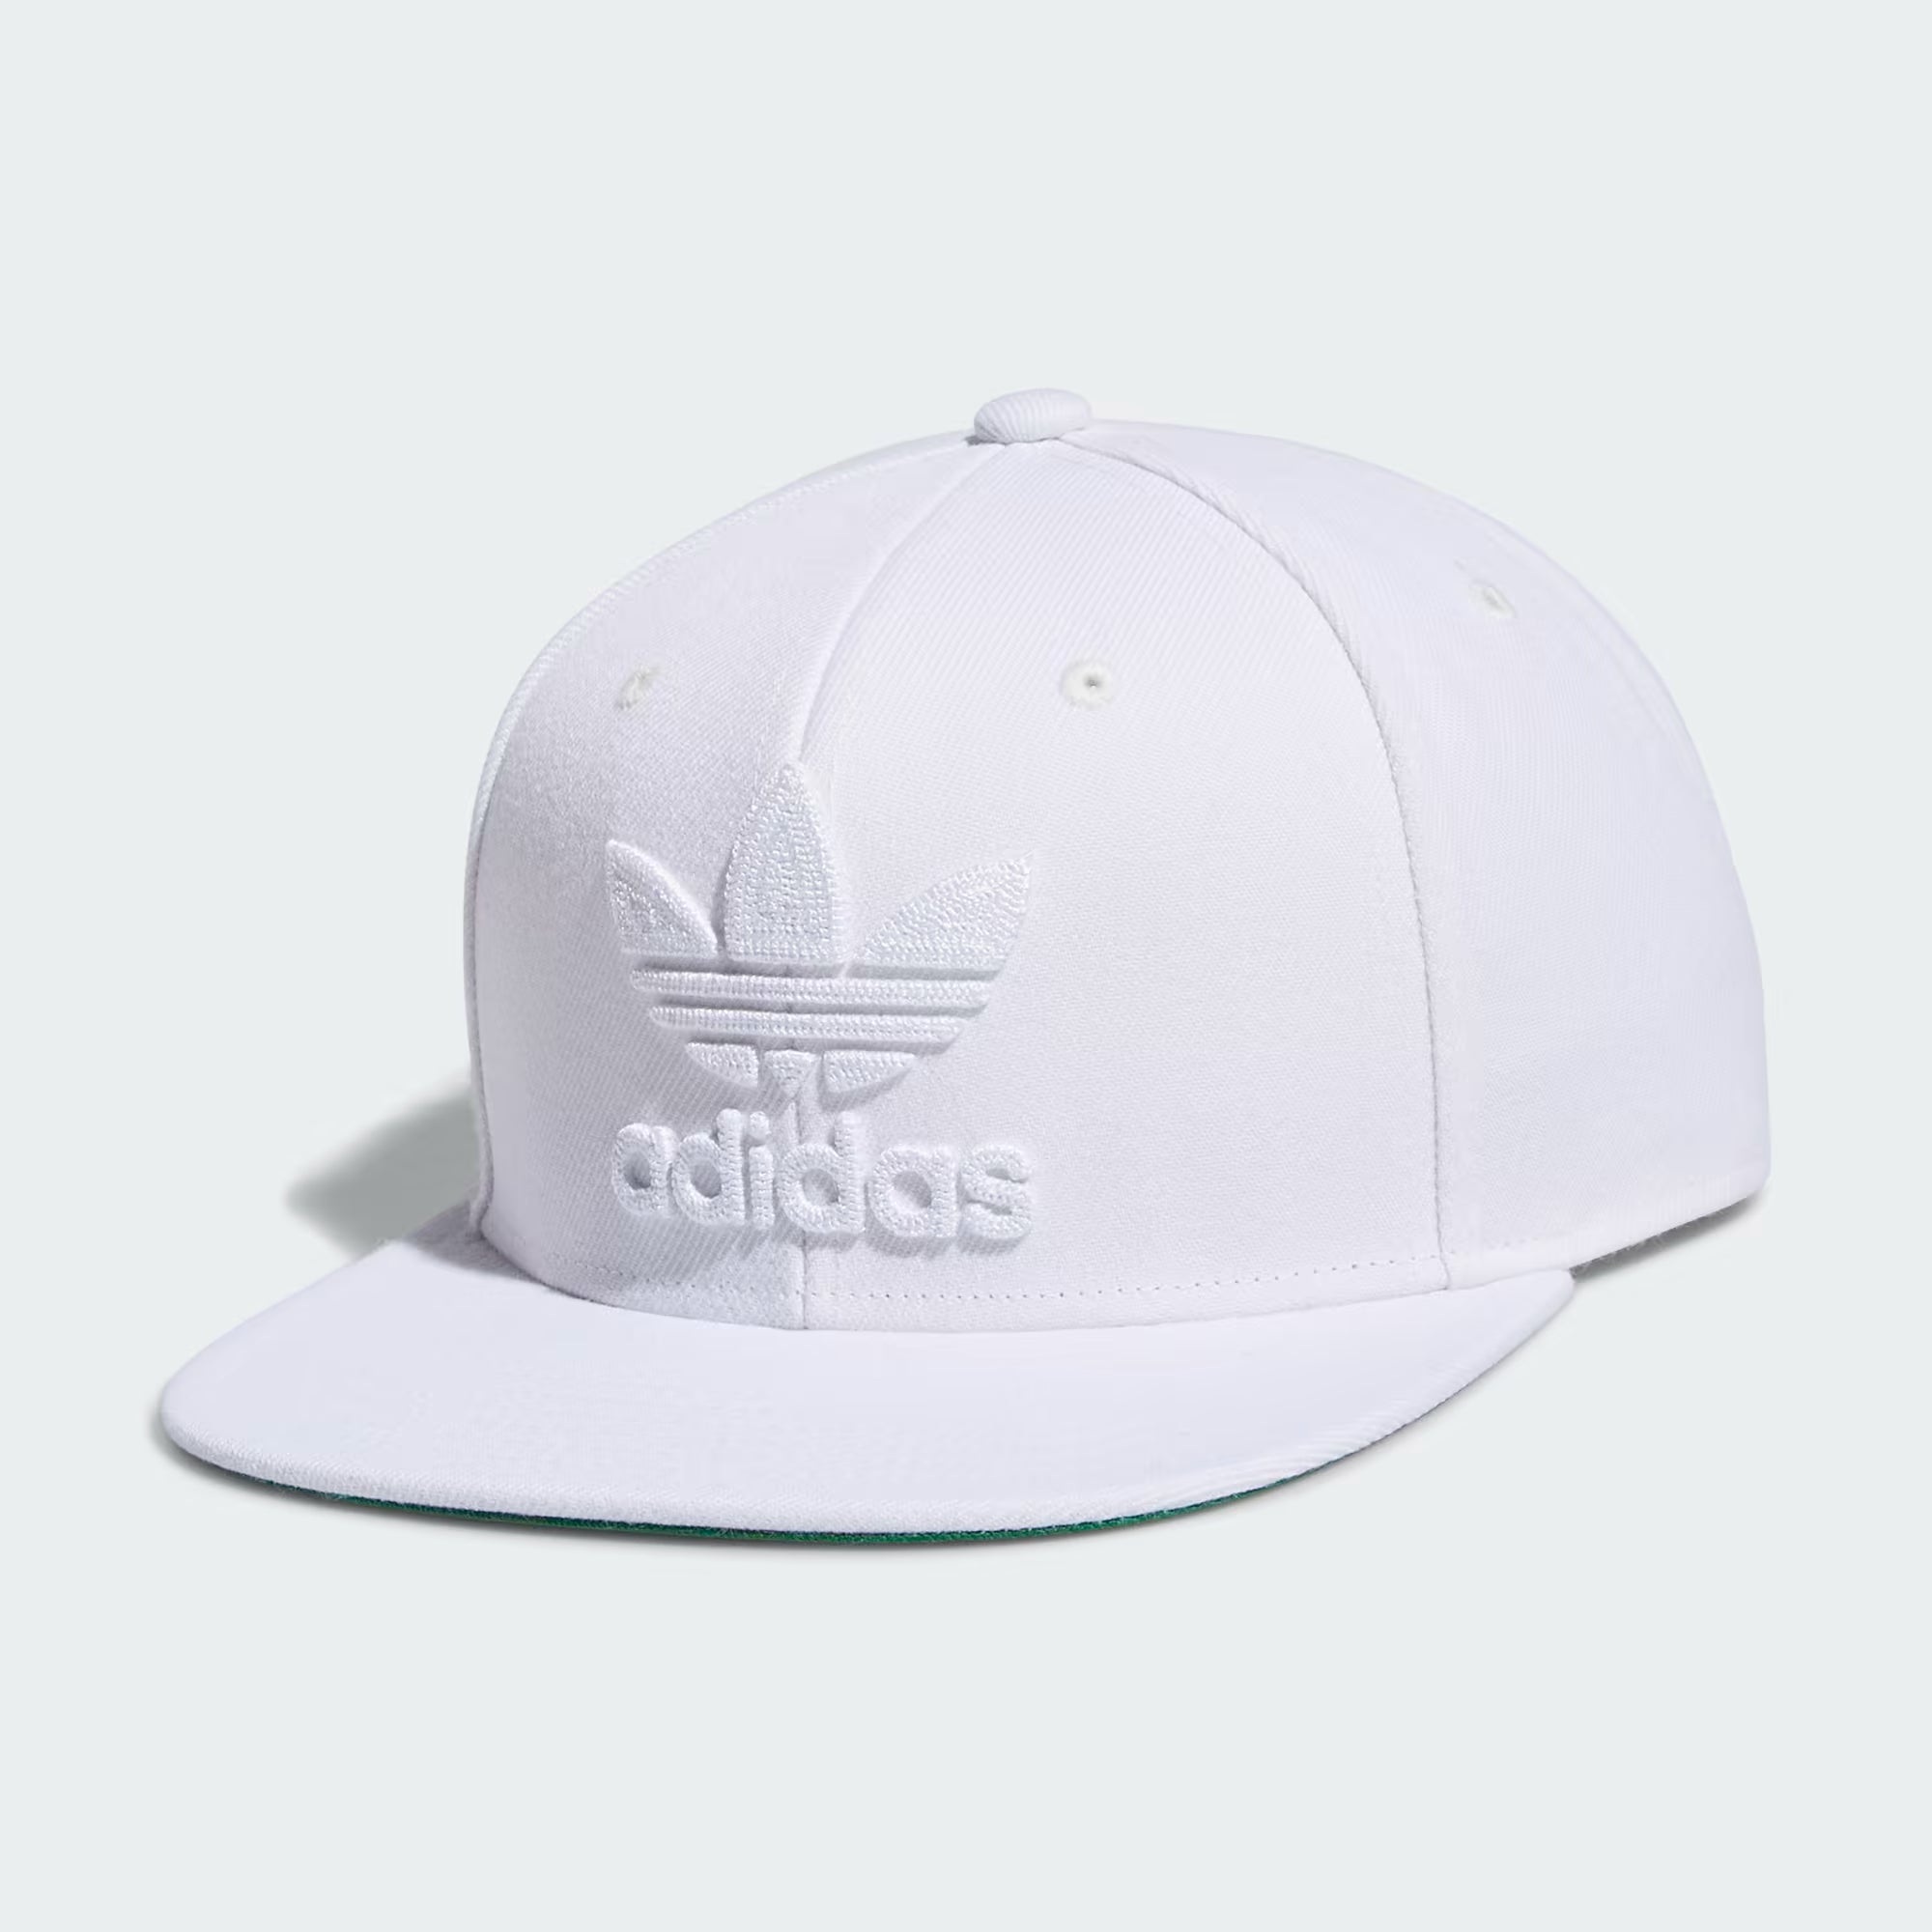 Adidas Trefoil Snapback Hat - Men